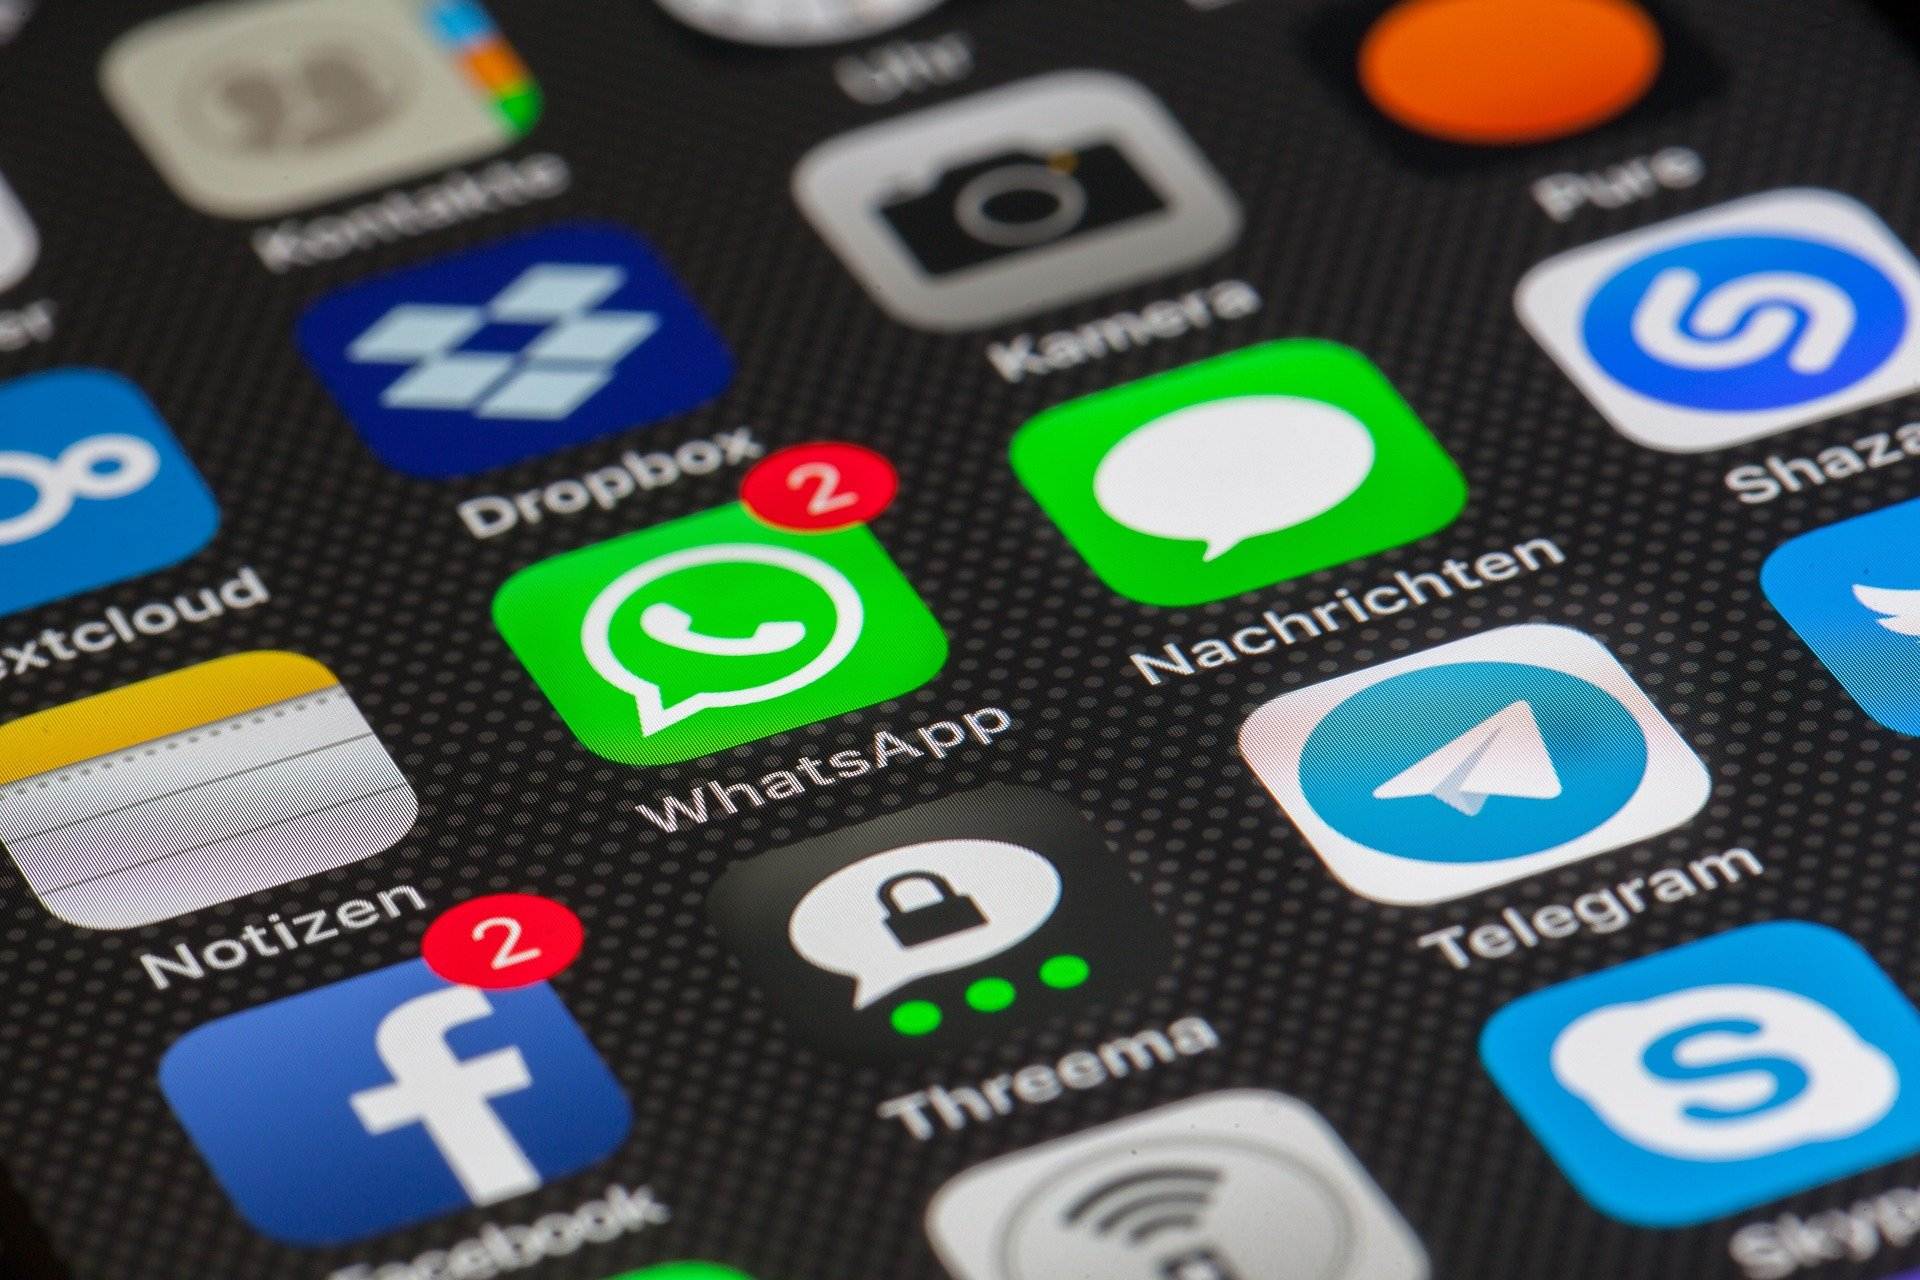 WhatsApp Vermell: què és, com instal·lar-lo i perills